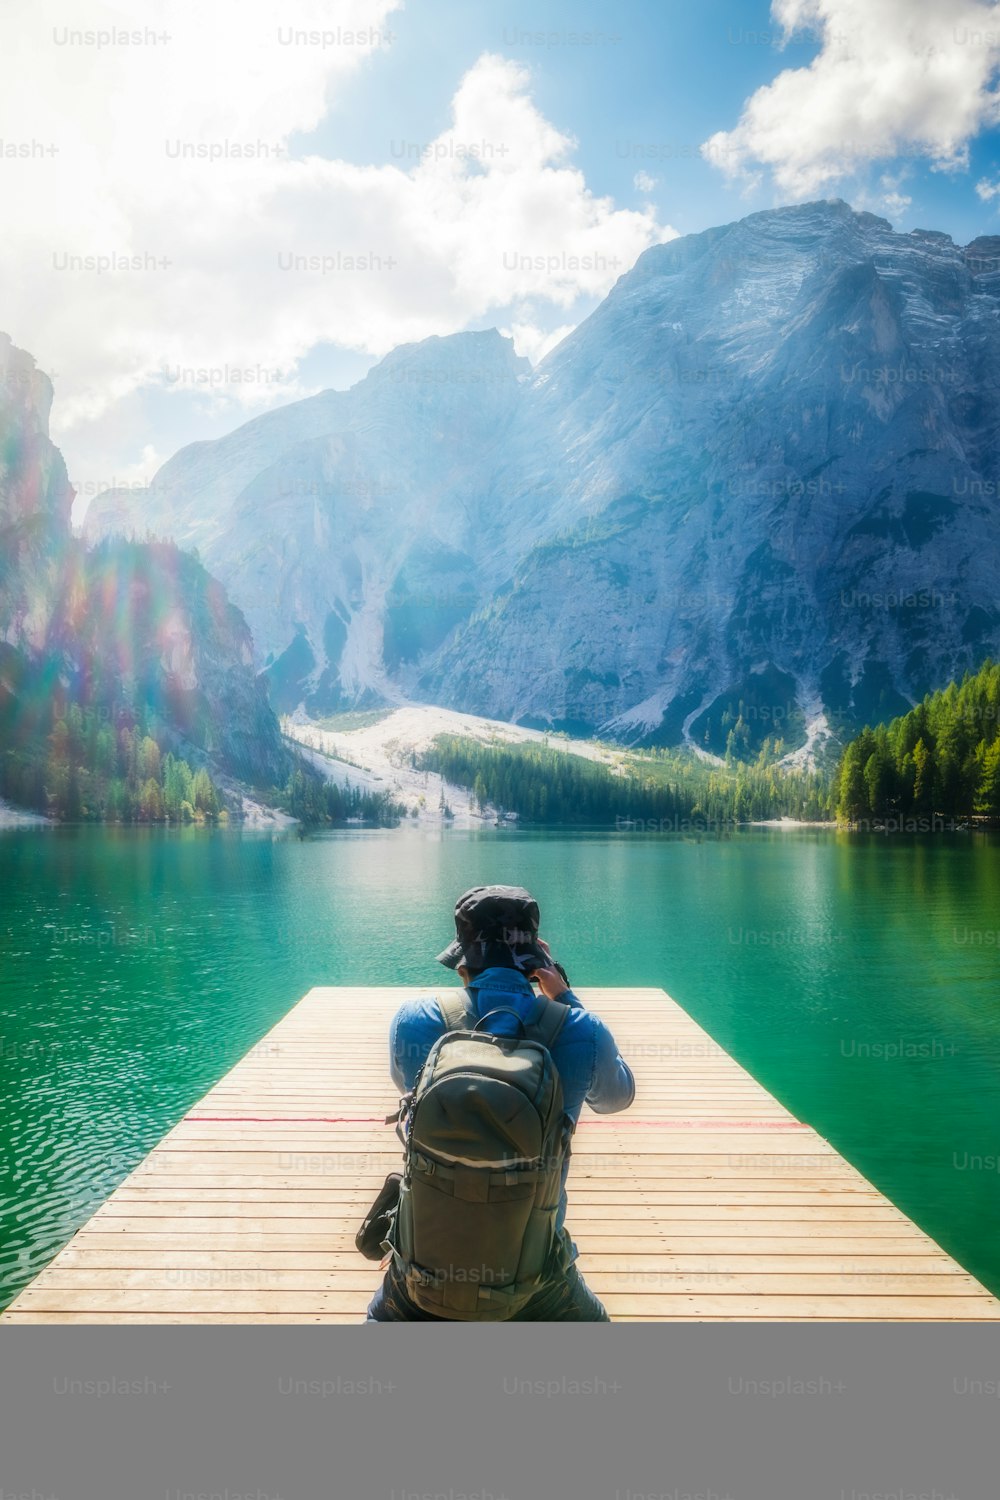 Escursionista di viaggio che scatta foto del Lago di Braies nelle Dolomiti, Italia. Escursionismo, viaggi e avventure.